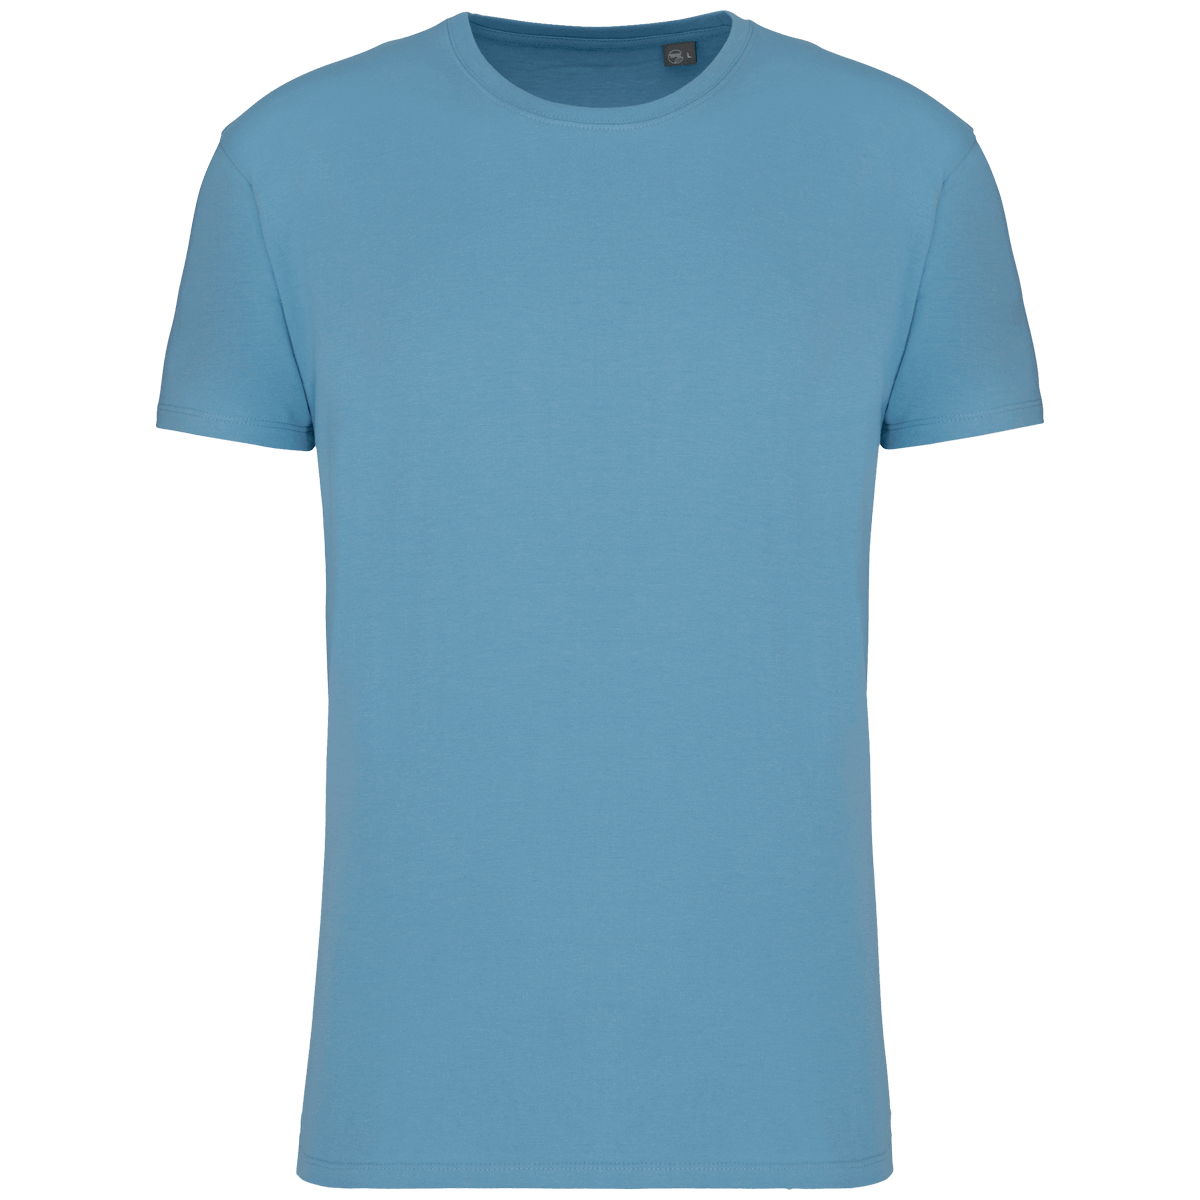 T-Shirt Bio Unisexe 190 Gr Personnalisé | 100% Coton Bio | T-Shirt Sans Étiquette De Marque Cloudy blue heather